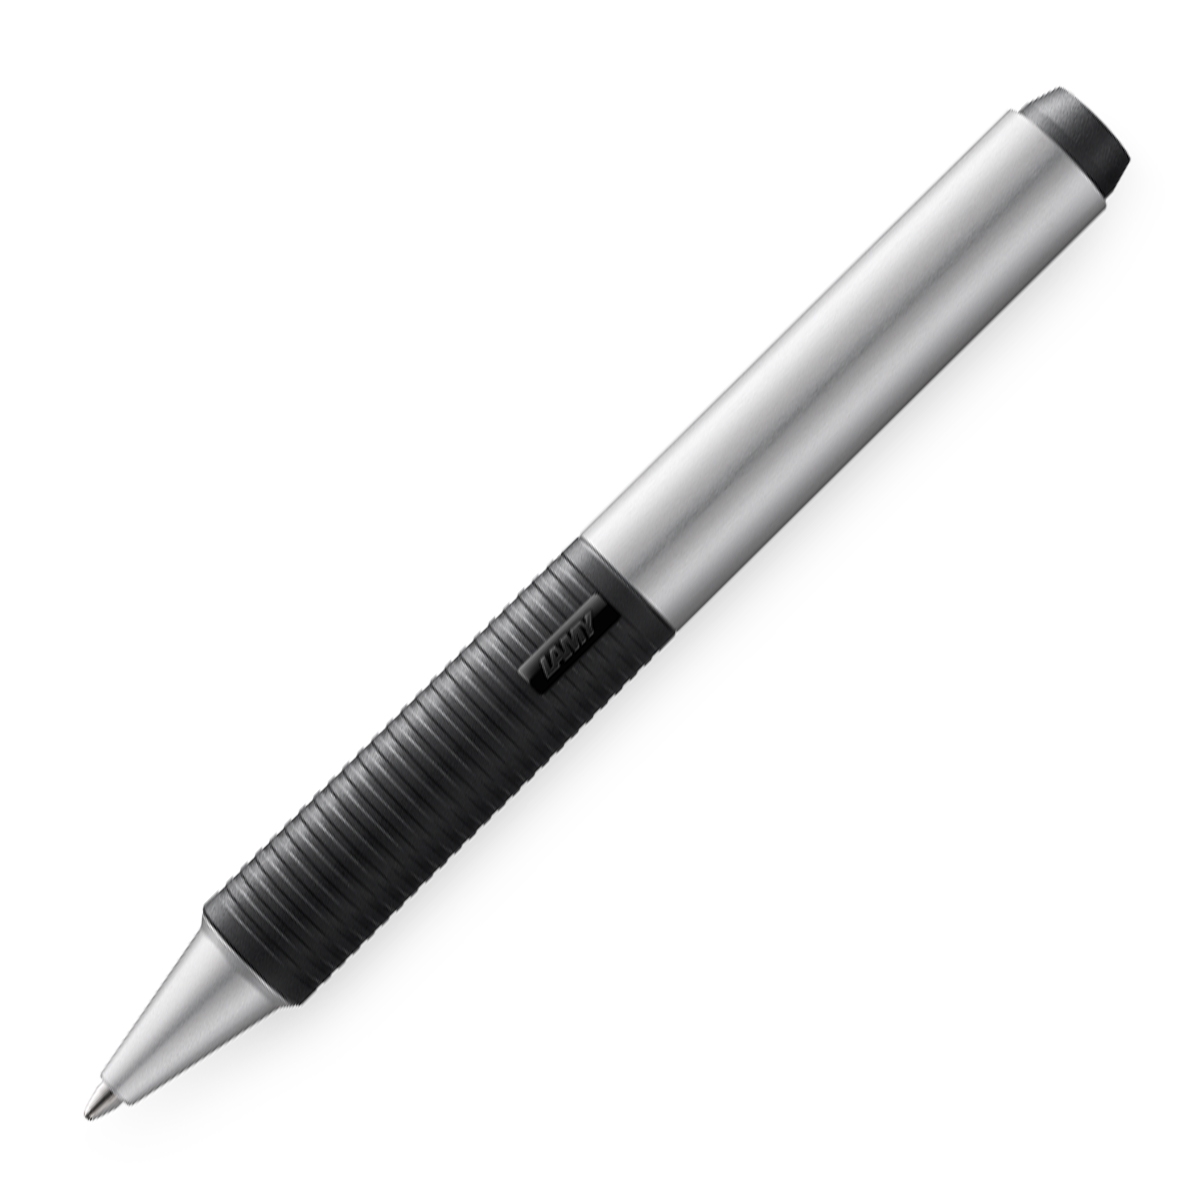 SCREEN 2-in-1 - Multi-function Pen - Silver